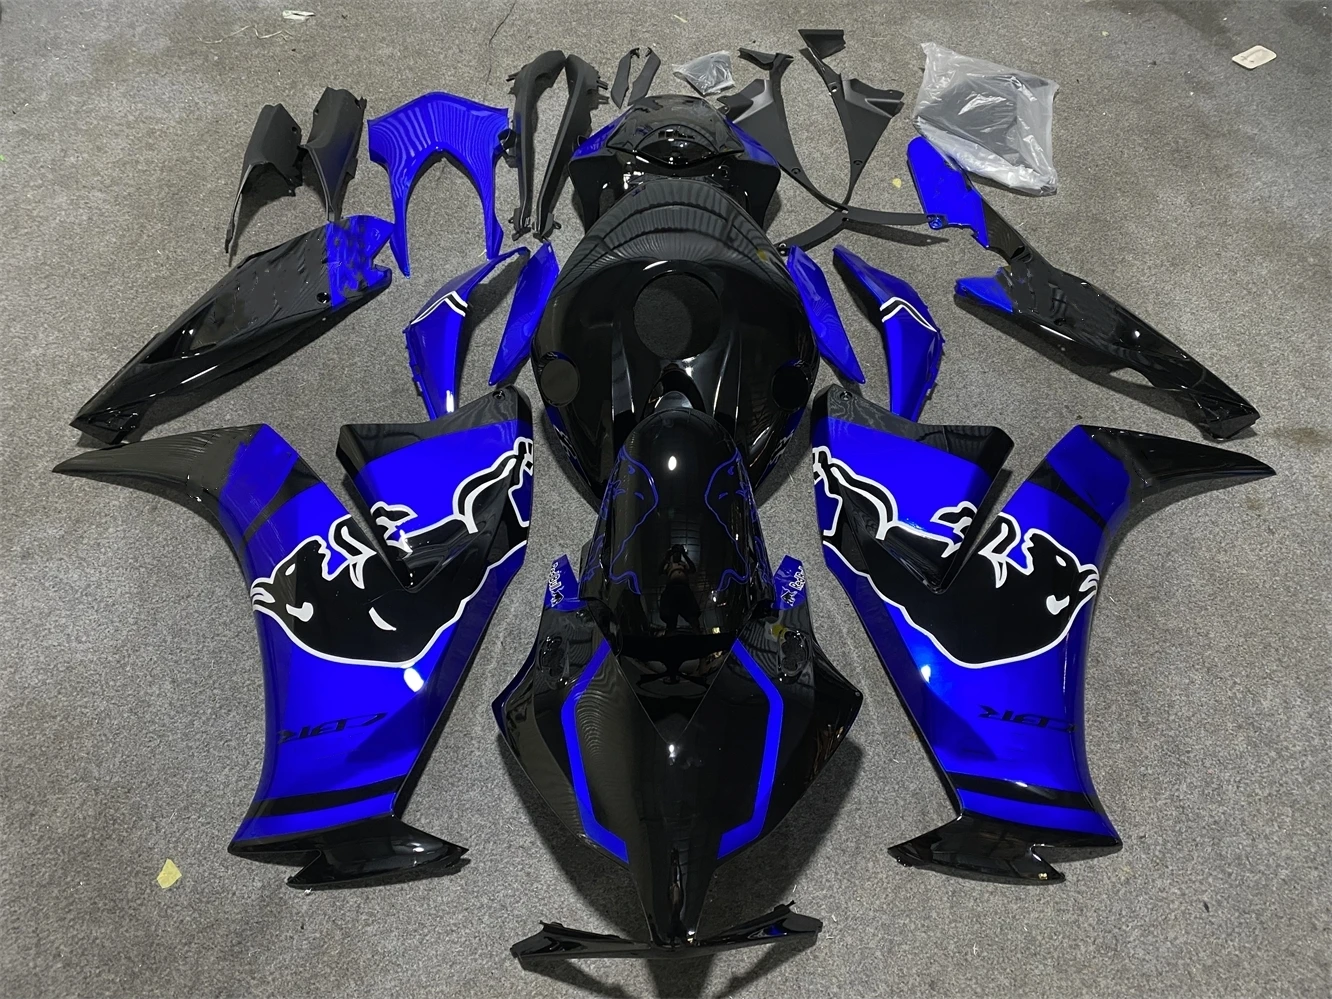 

Мотоциклетный комплект обтекателей подходит для CBR1000RR 12 13 14 15 16 лет CBR1000 2012 2013 2014 2015 2016 обтекатель черный синий мотоцикл